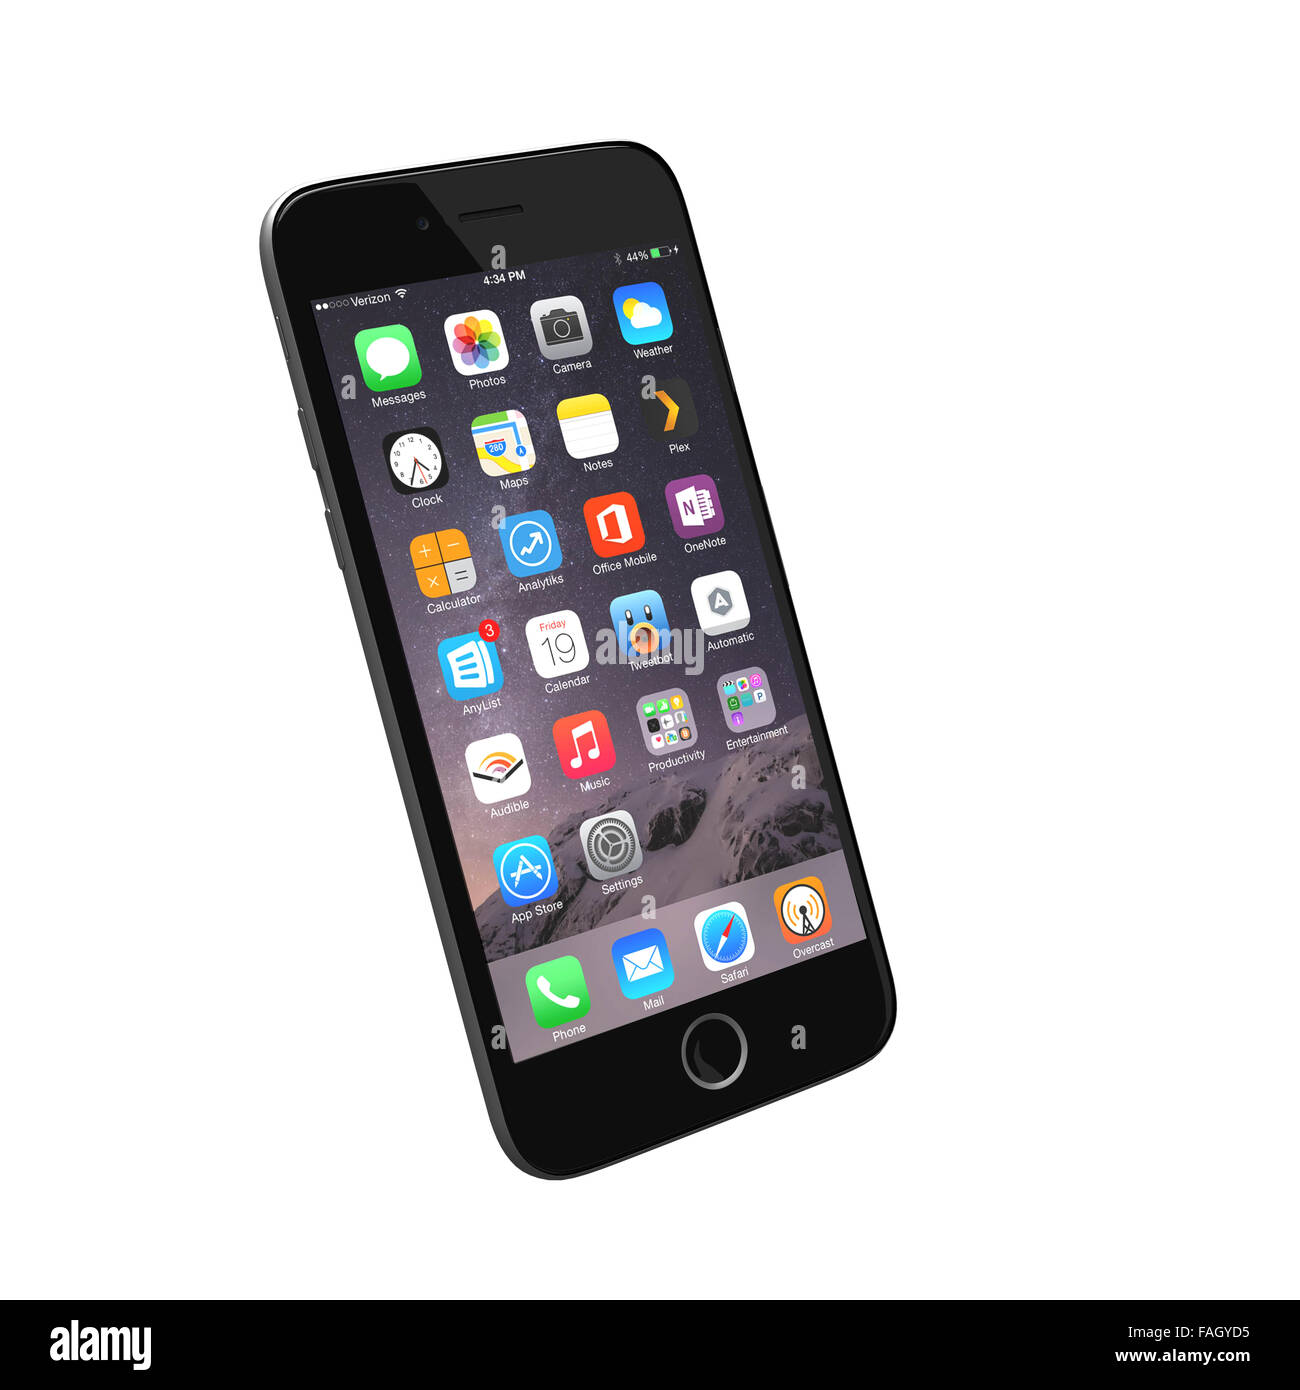 Hilvarenbeek, Pays-Bas - le 18 décembre 2015 : rendre réaliste d'un  téléphone intelligent basé sur l'iPhone 6 images de référence Photo Stock -  Alamy